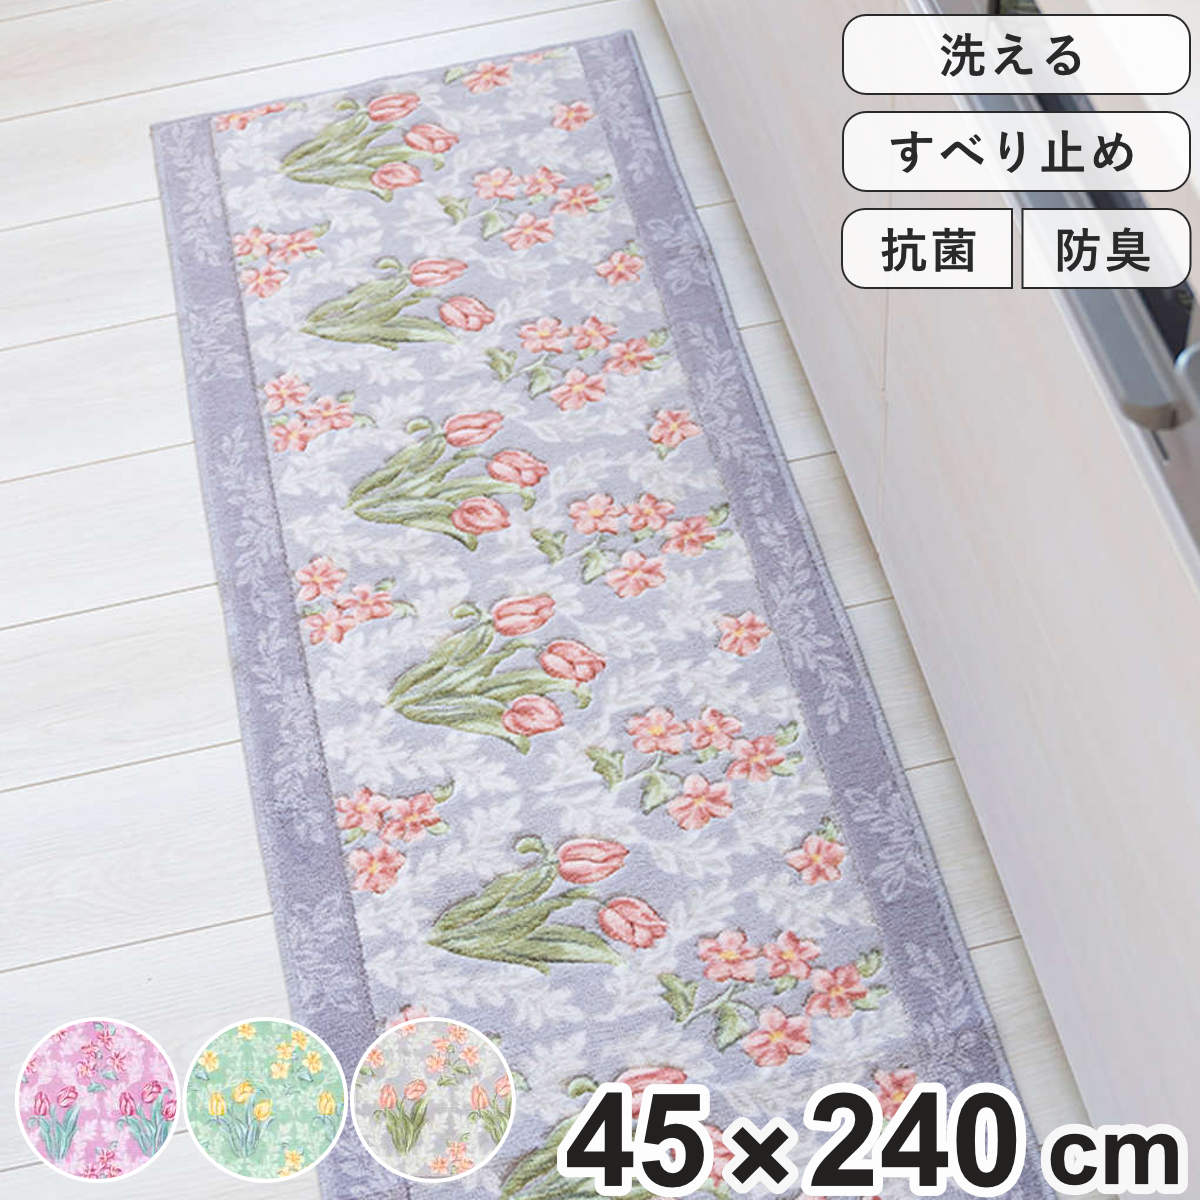 キッチンマット 花柄 ロイヤルコレクション アーツ 45×240cm